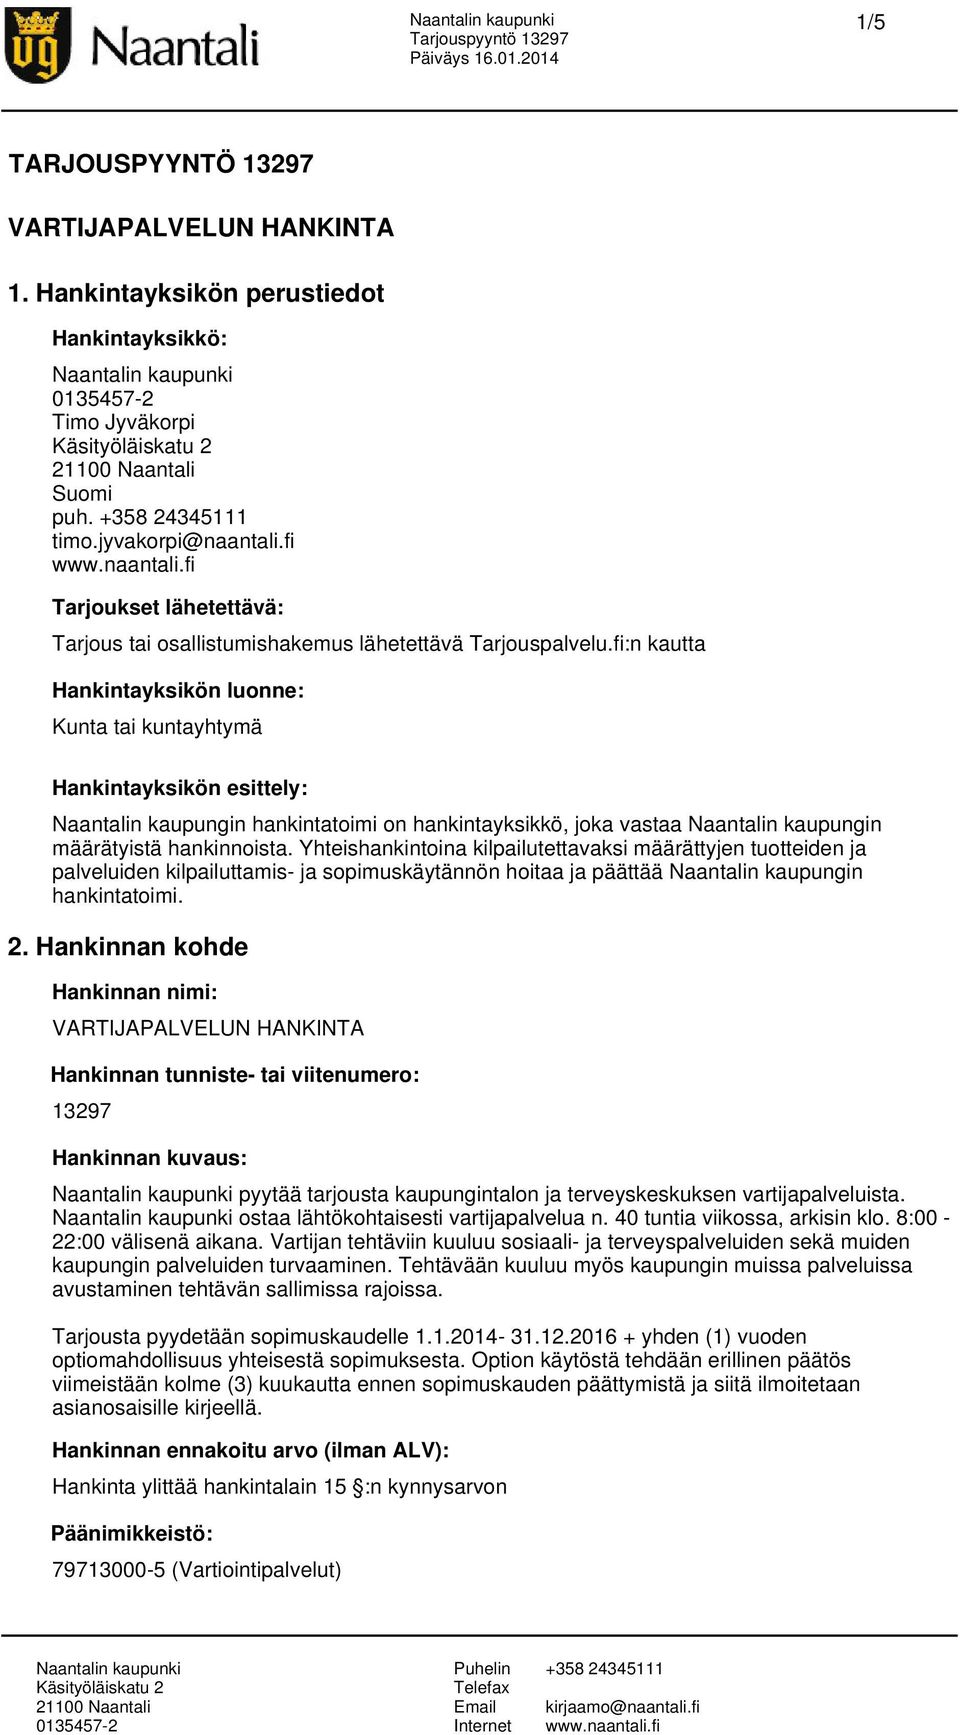 fi:n kautta Hankintayksikön luonne: Kunta tai kuntayhtymä Hankintayksikön esittely: Naantalin kaupungin hankintatoimi on hankintayksikkö, joka vastaa Naantalin kaupungin määrätyistä hankinnoista.